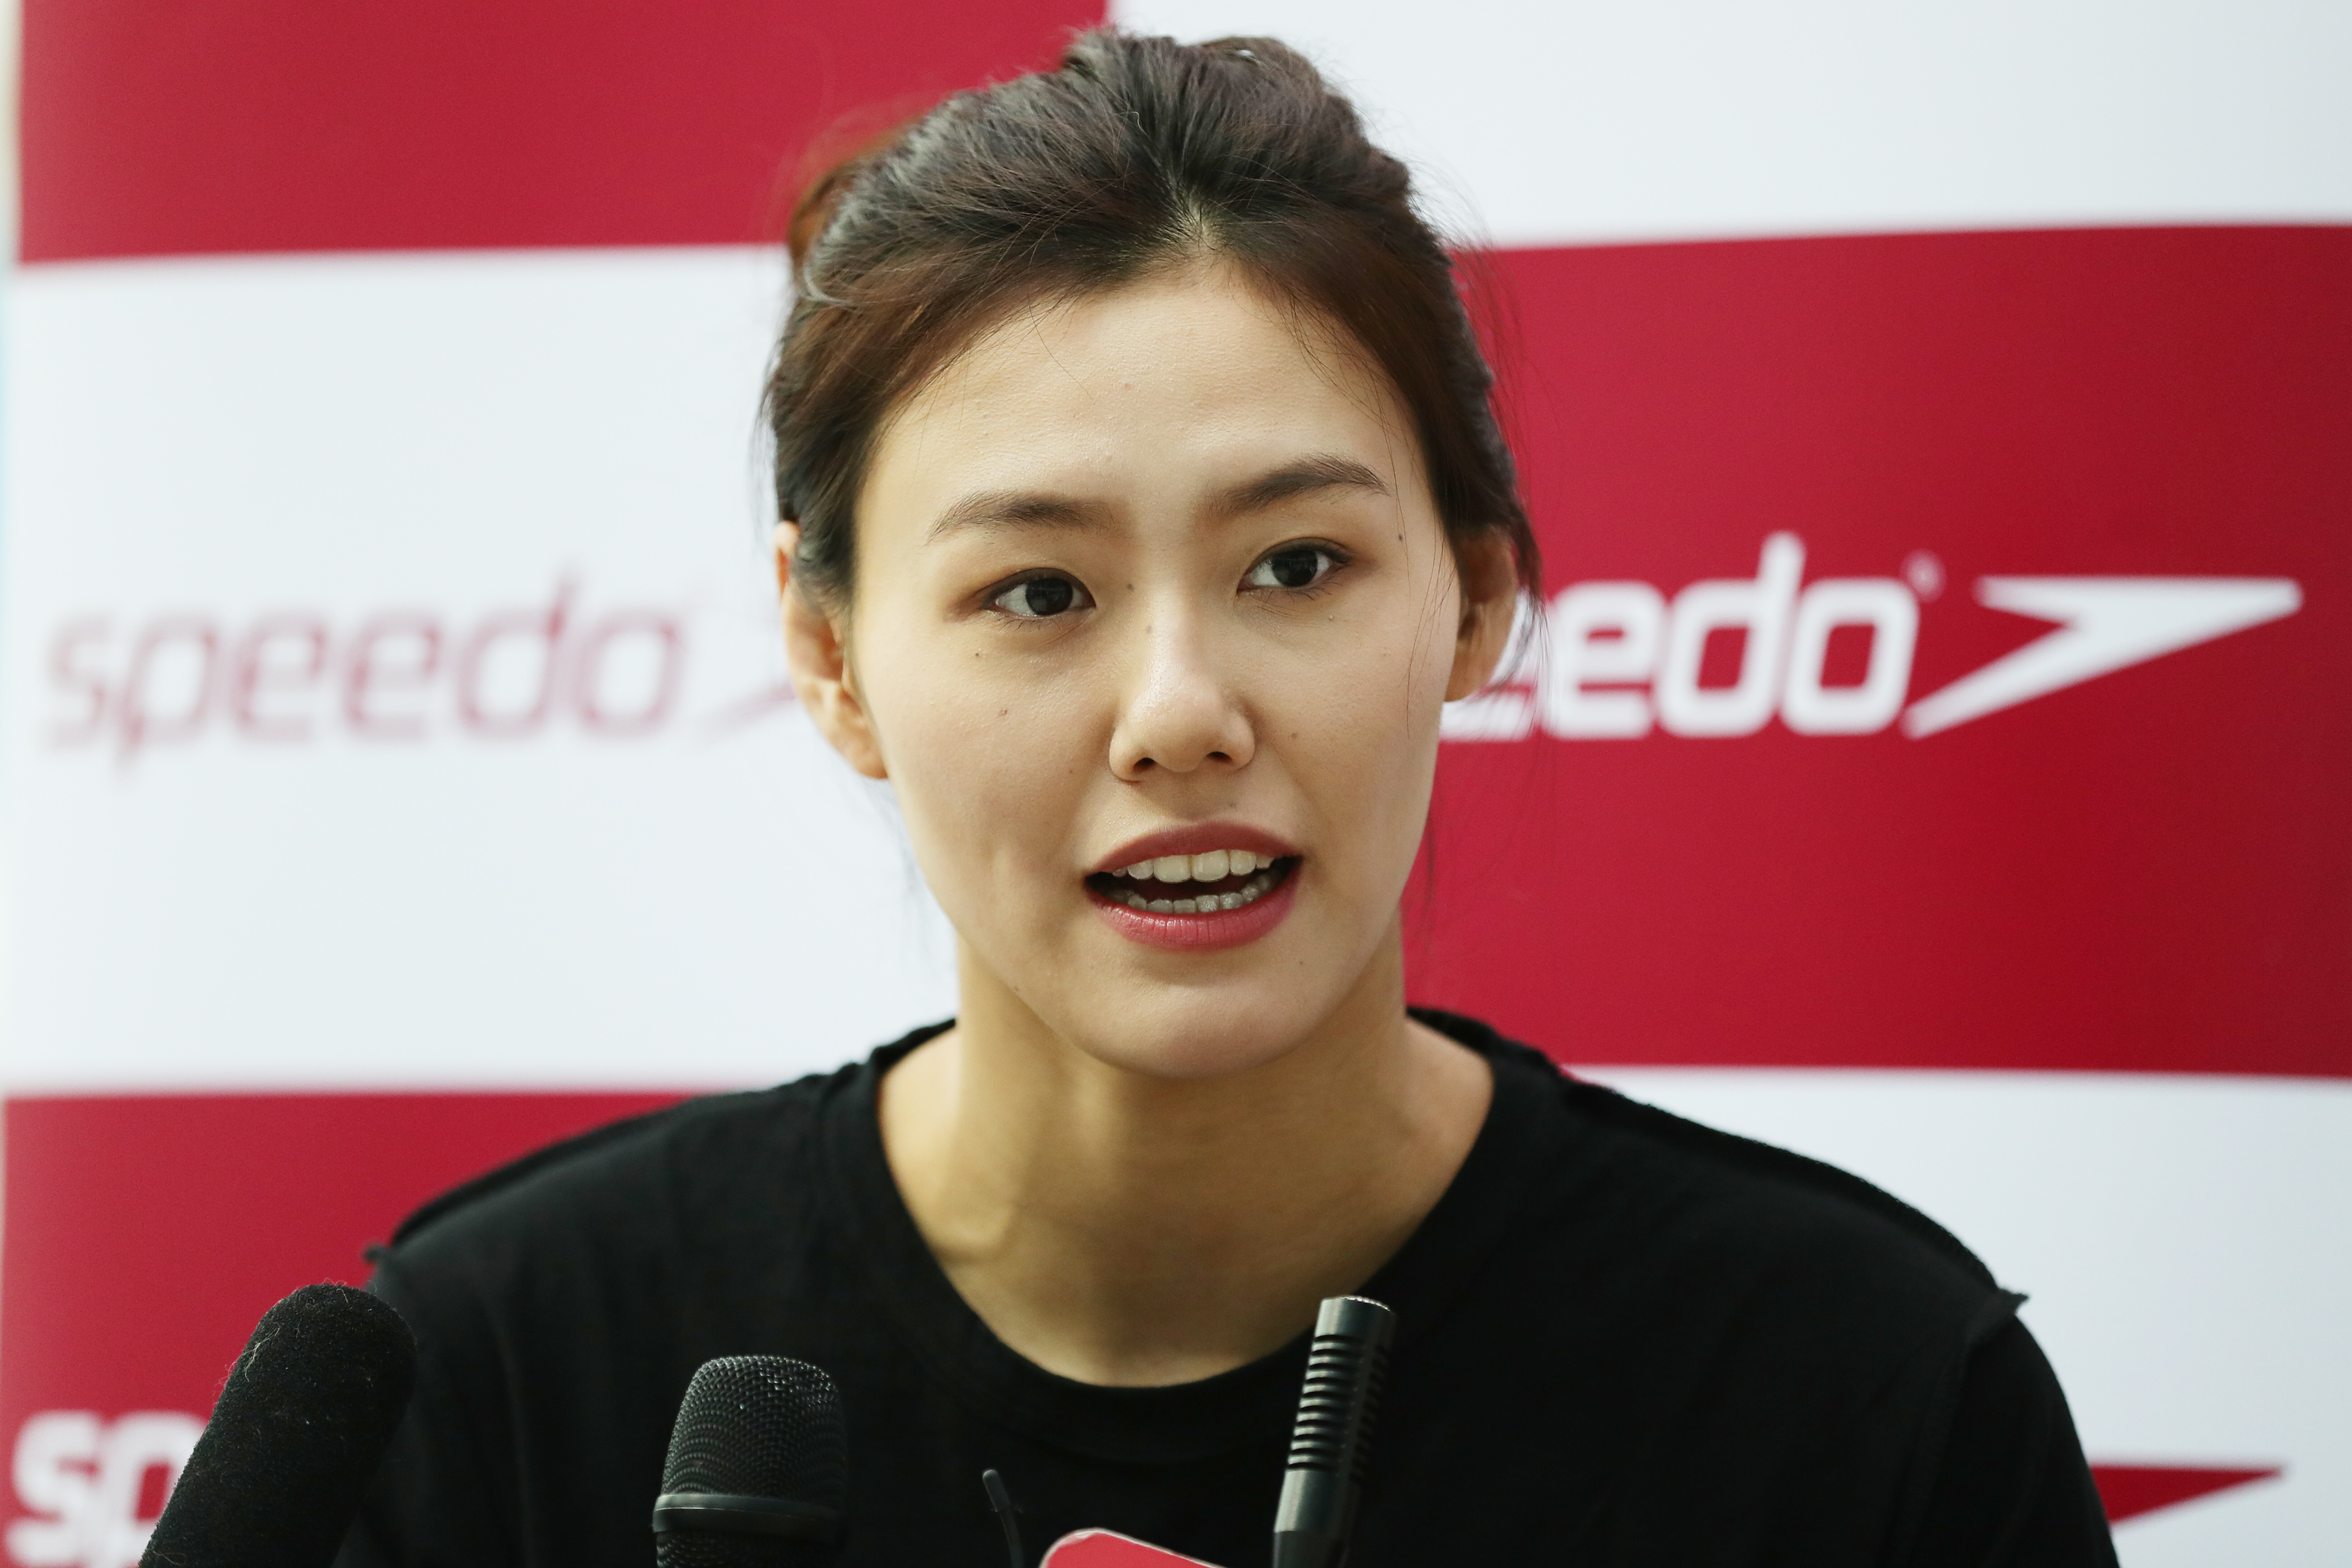 刘湘打破女子50米仰泳世界纪录 - 滚动 - 华声新闻 - 华声在线